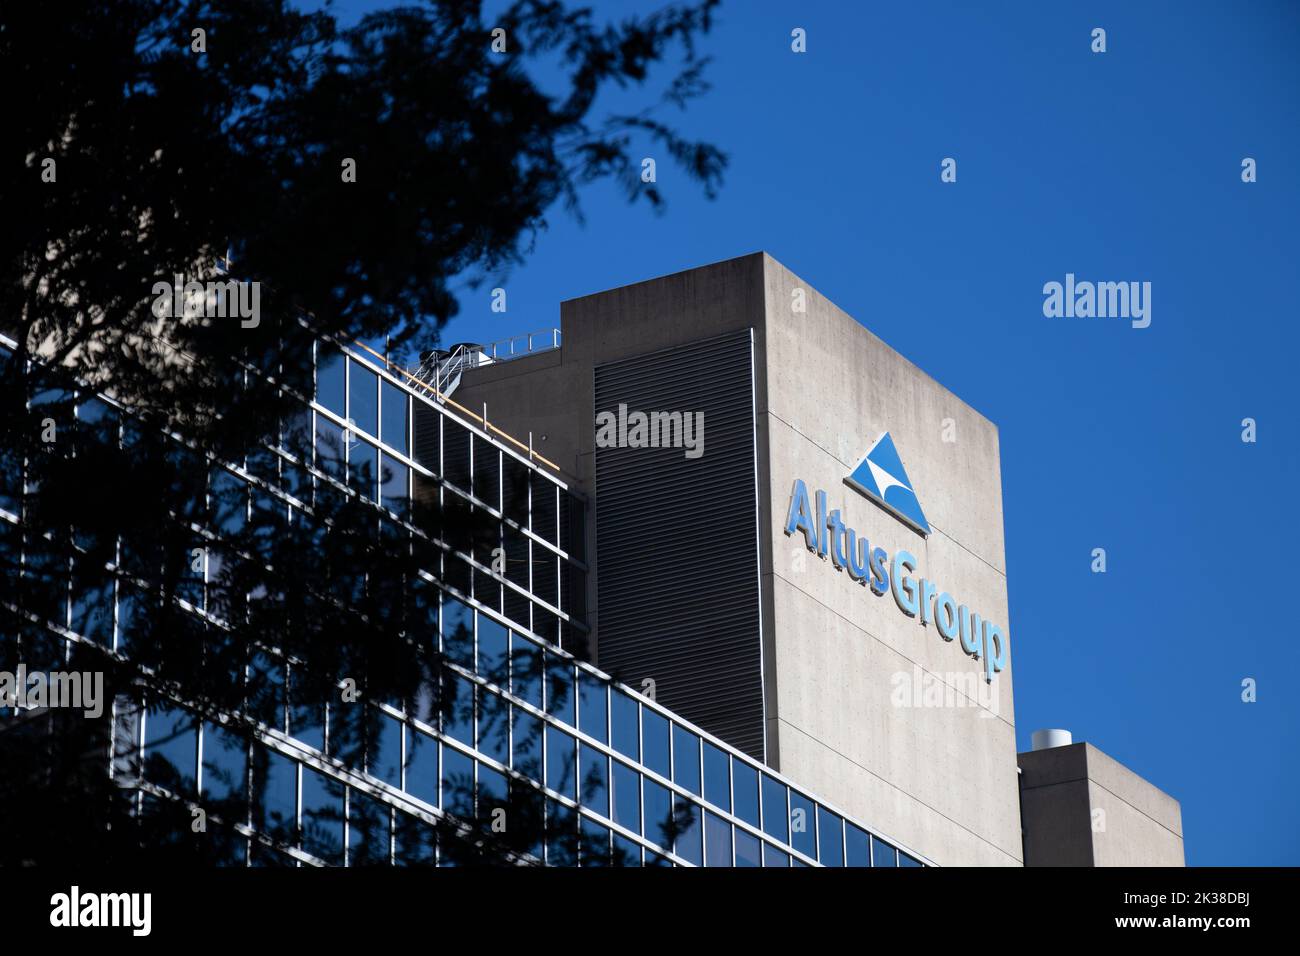 Le logo du Groupe Altus est visible au sommet de son bureau et de son siège social de Toronto par temps clair; le Groupe Altus offre des logiciels et des services consultatifs. Banque D'Images